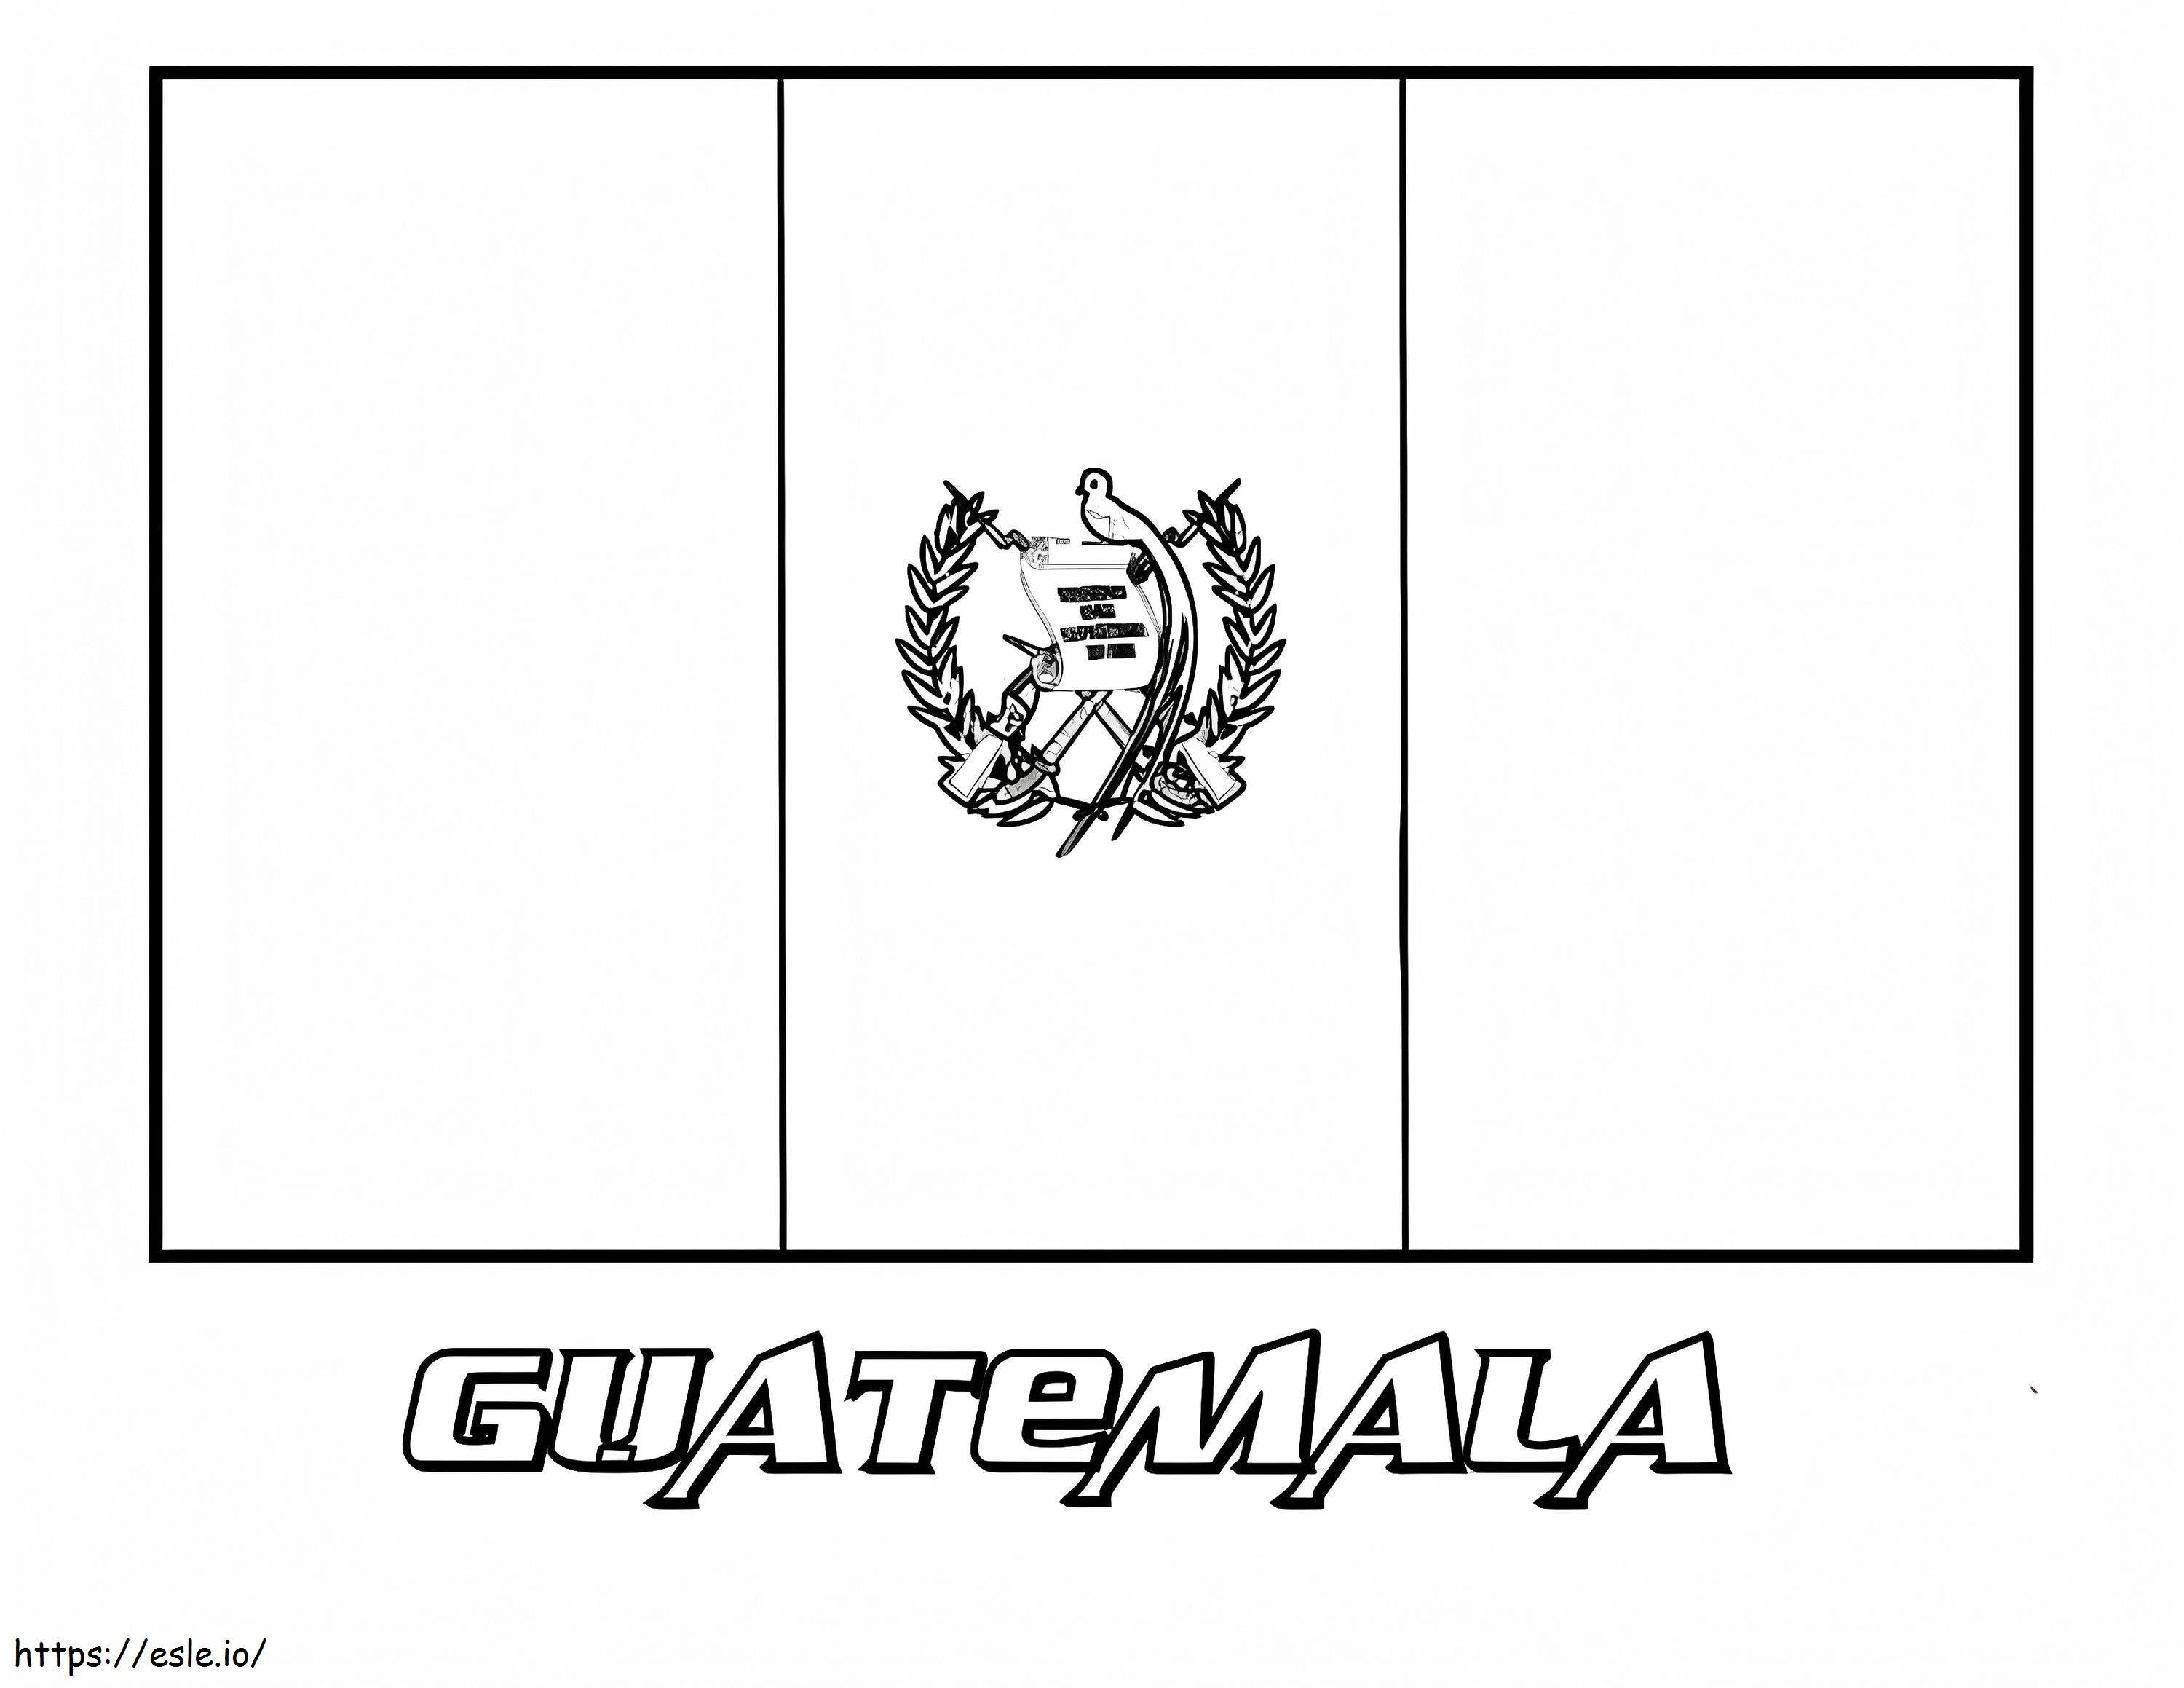 Bandiera del Guatemala da colorare